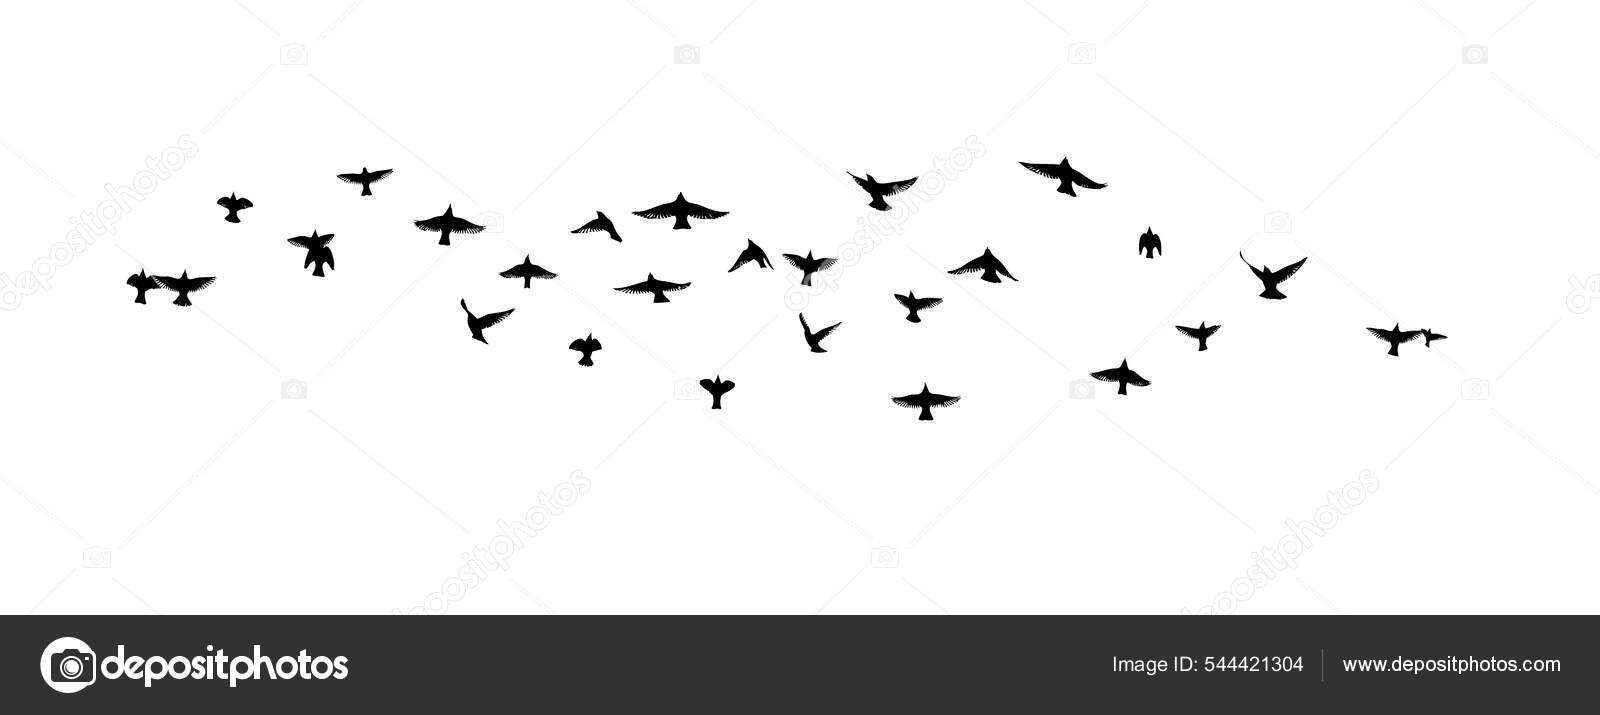 空飛ぶ鳥の群れ 自由鳥だ ベクターイラスト ストックベクター C Maryia777